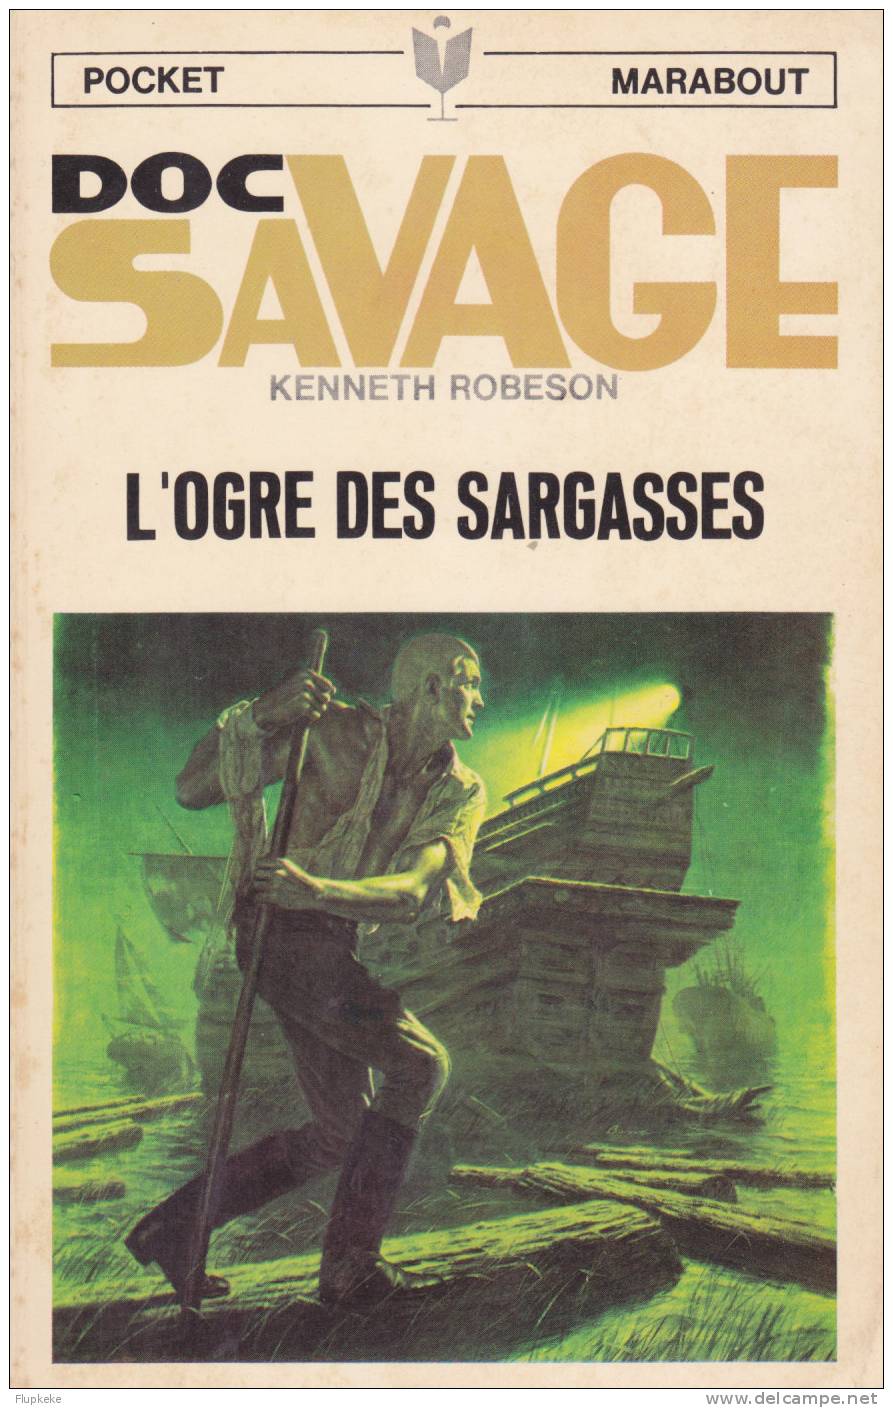 Pocket Marabout 86 Doc Savage L´Ogre Des Sargasses Kenneth Robeson 1970 Couverture Jim Bama Illustrations Lievens - Marabout Junior